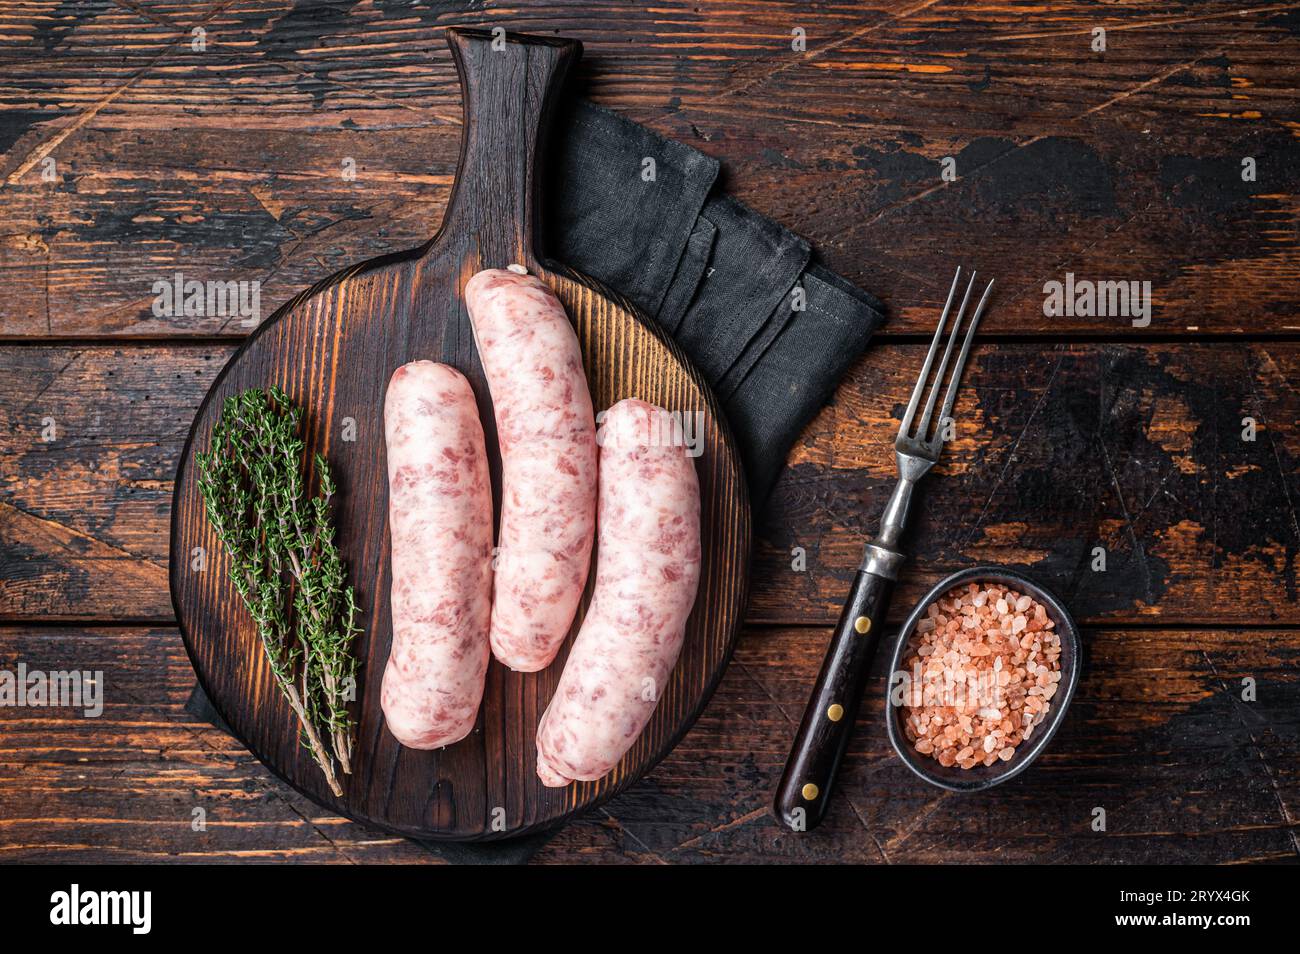 Saucisses de viande fraîche brute Bratwurst prêtes à cuire sur bois. Arrière-plan en bois. Vue de dessus. Banque D'Images